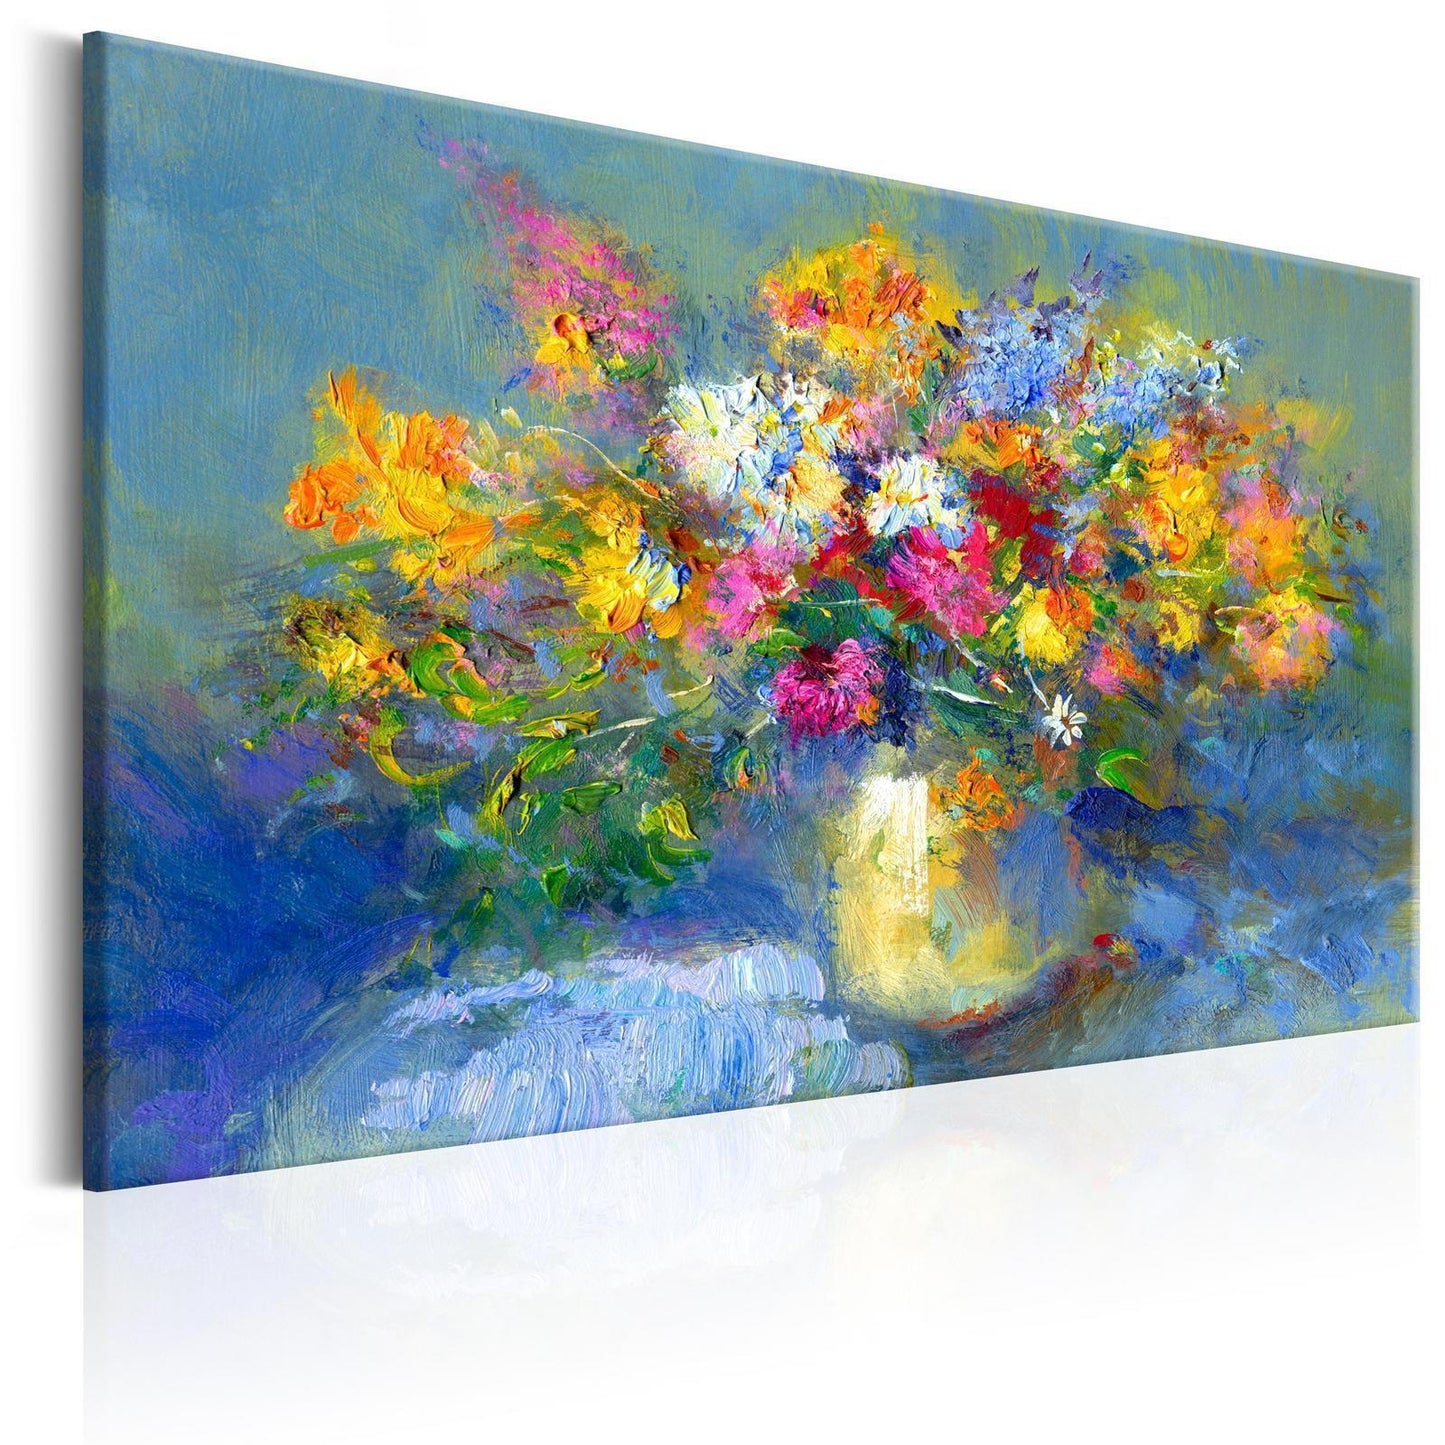 Handgeschilderd schilderij - Autumn Bouquet